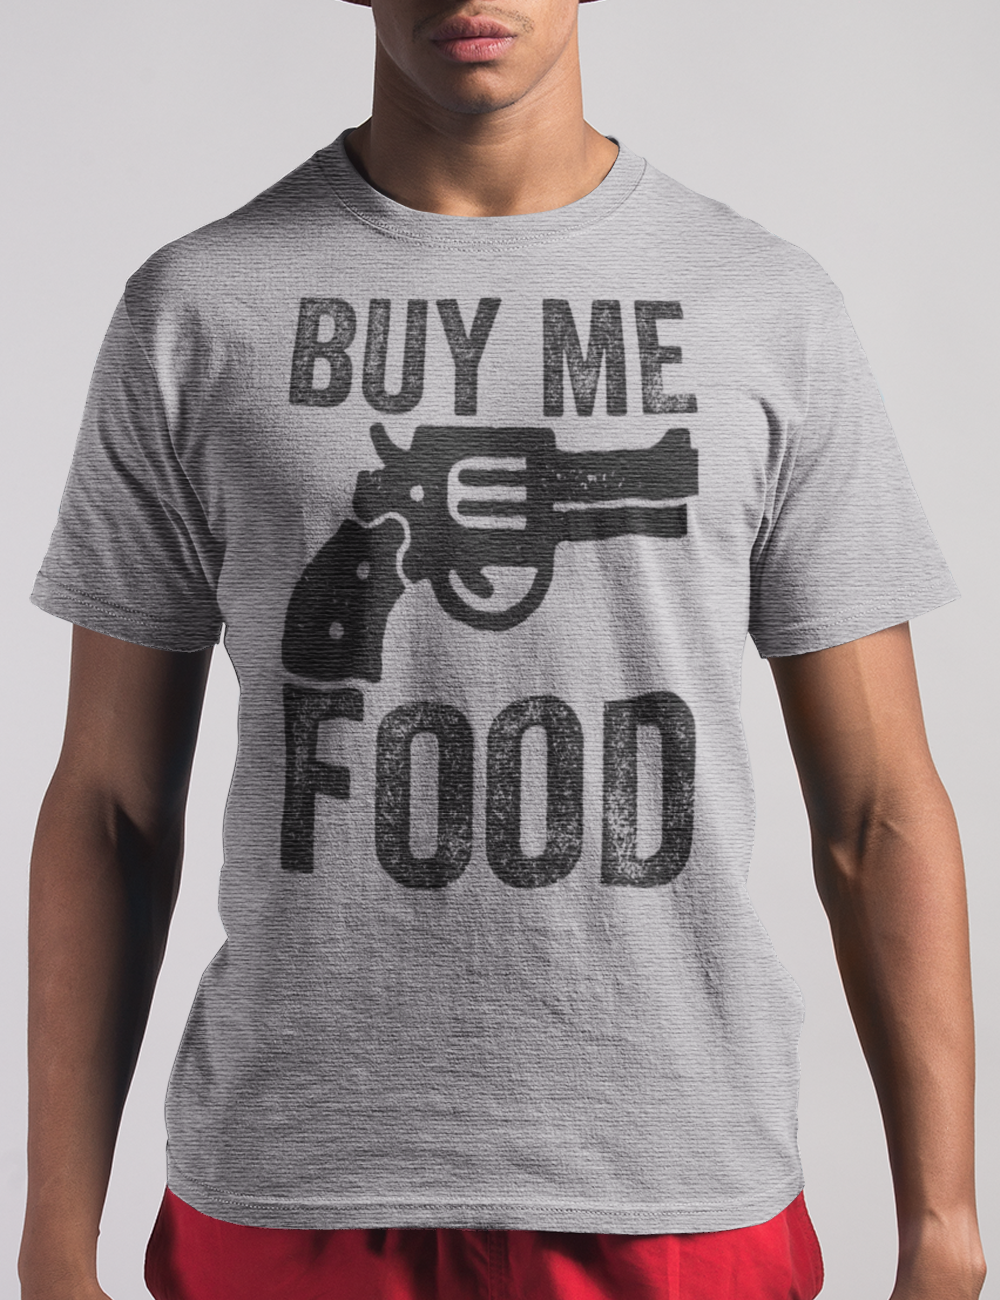 Buy Me Food | T-Shirt OniTakai